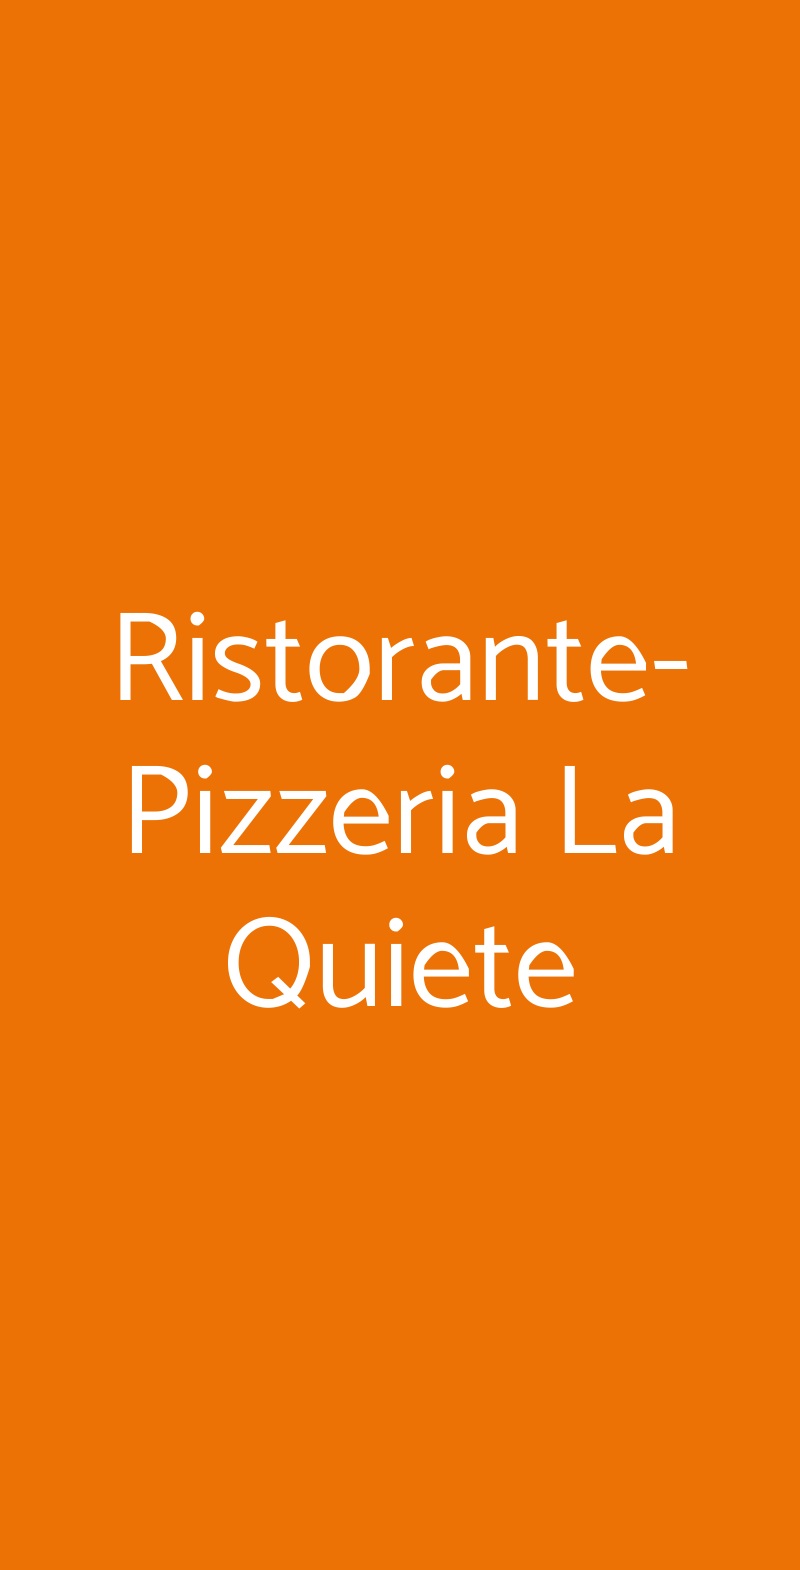 Ristorante-Pizzeria La Quiete Puegnago sul Garda menù 1 pagina